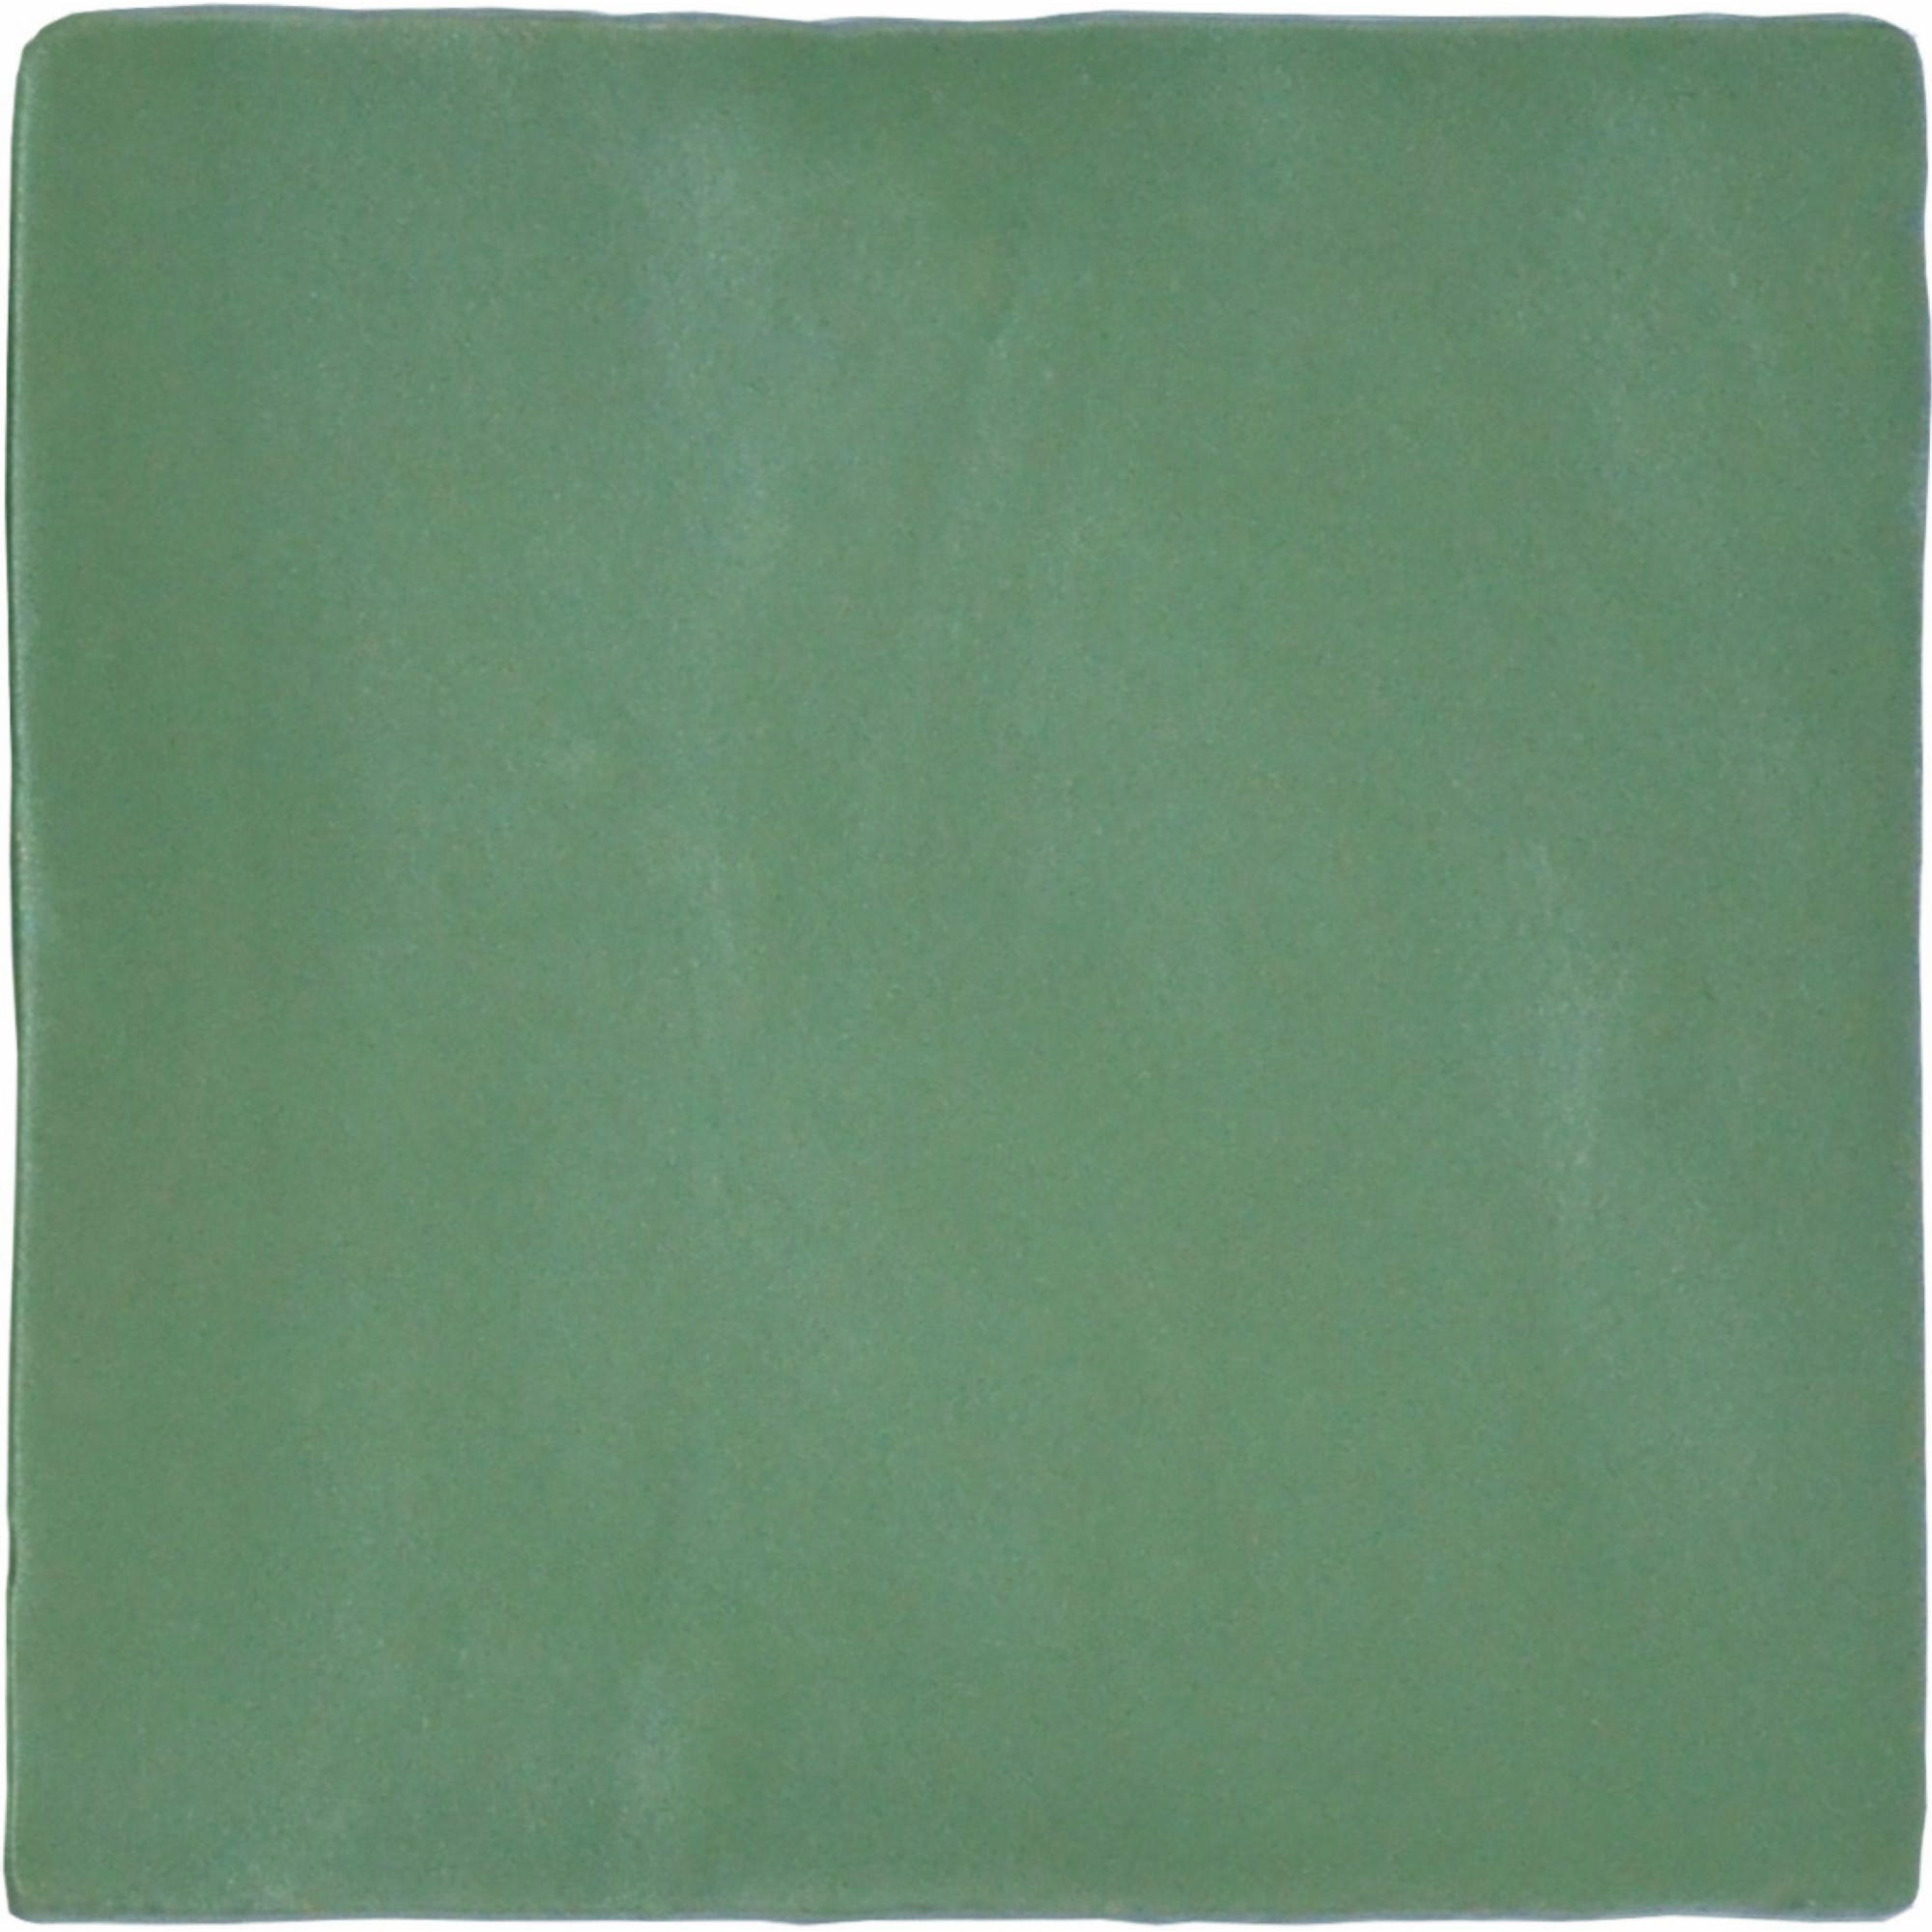 Wandfliese 'Crayon' grün matt 13 x 13 cm + product picture